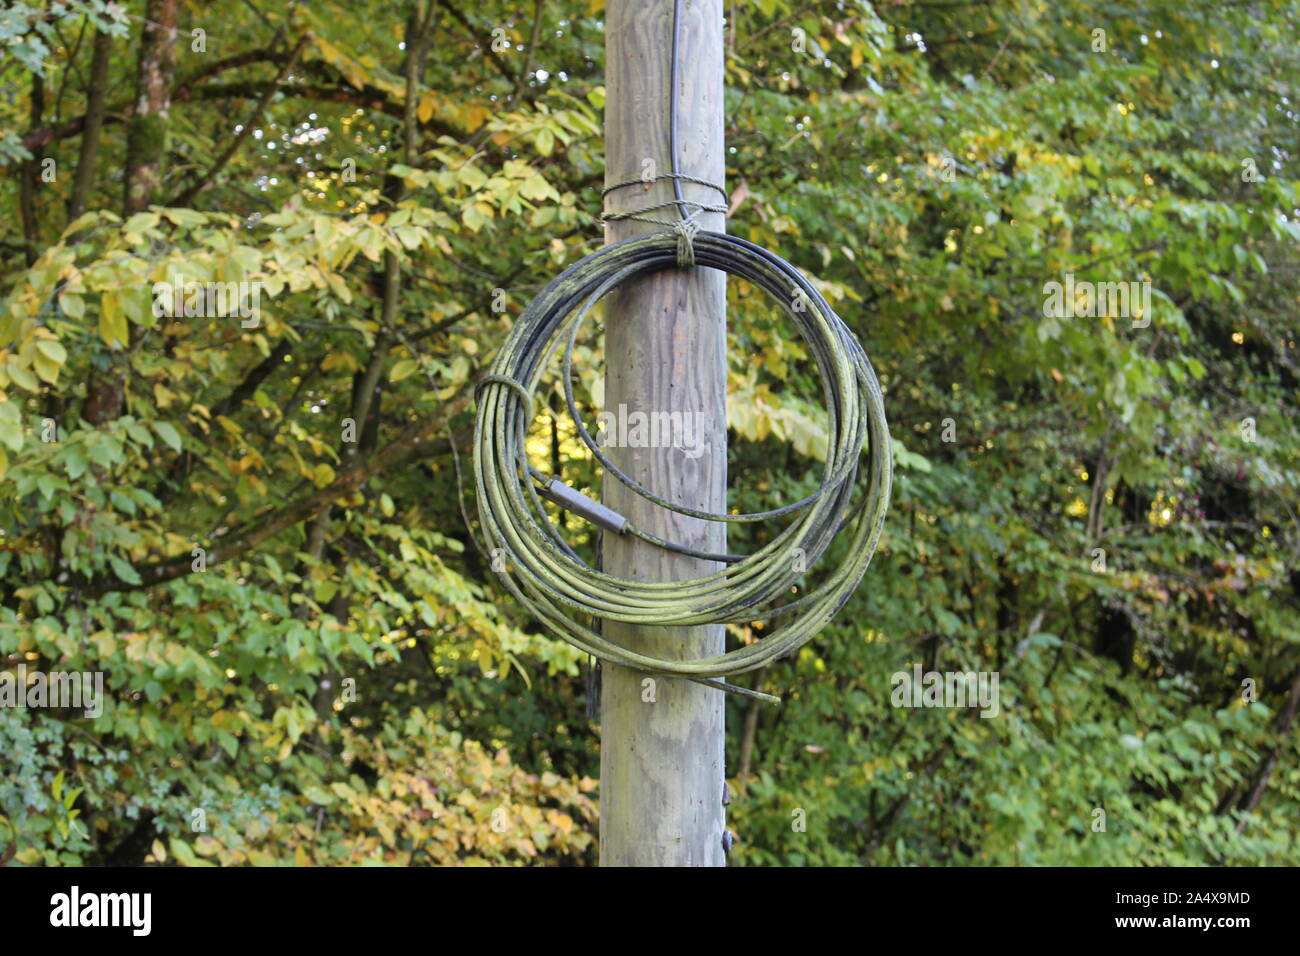 Arrotolate il cavo con moss su di essa legata a un vecchio montante in legno, scelto focus sul cavo Foto Stock